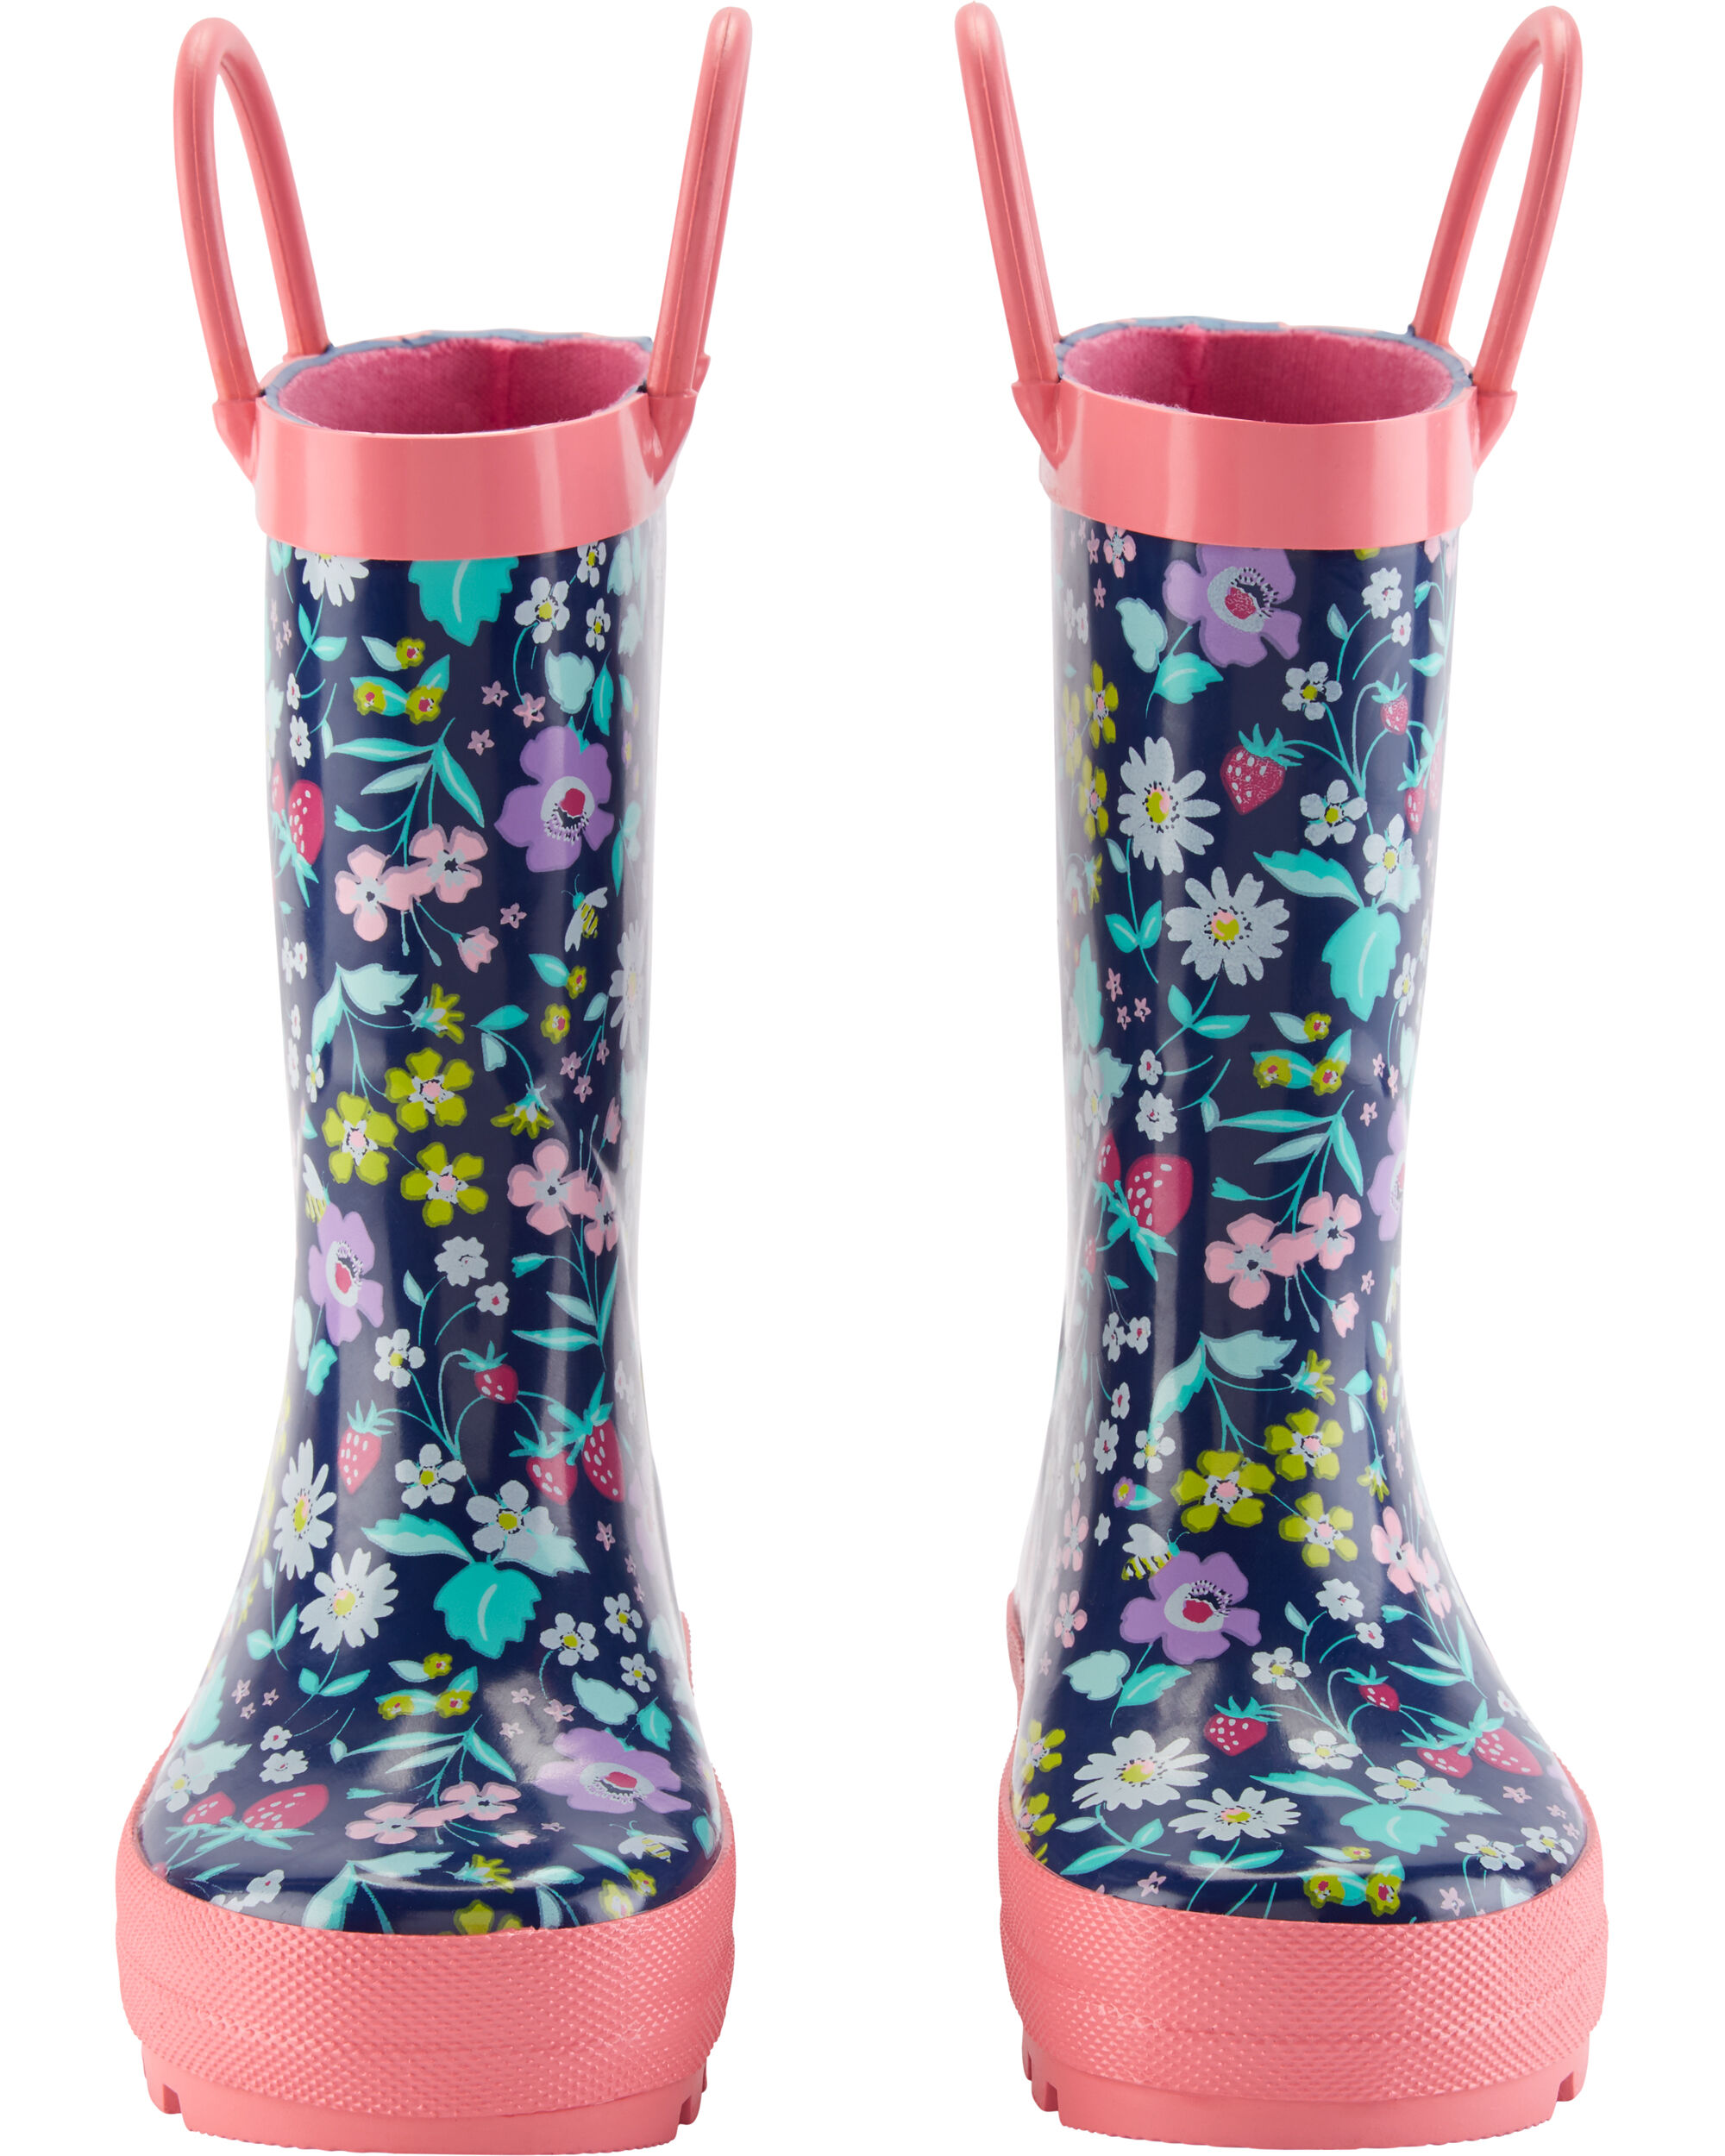 oshkosh rain boots